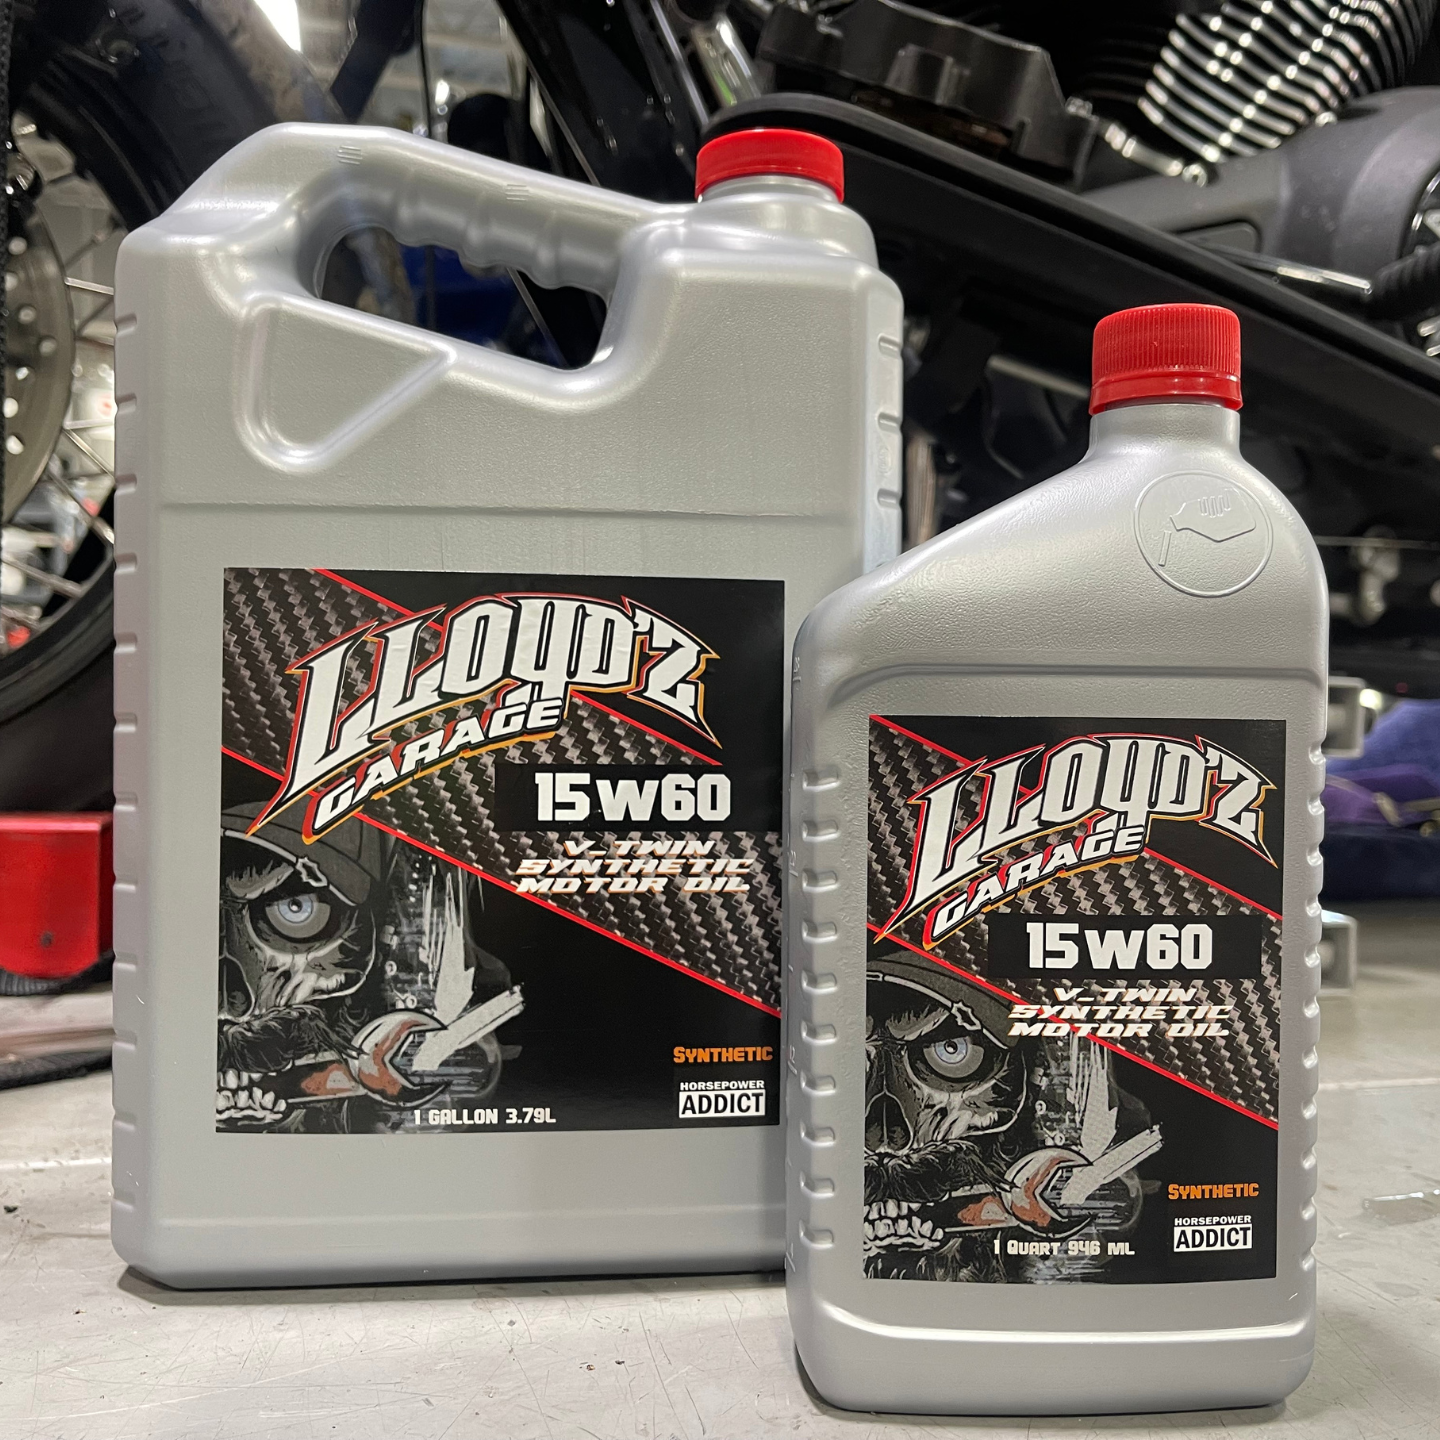 Lloyd'z Garage Performance Motor Oil Kit